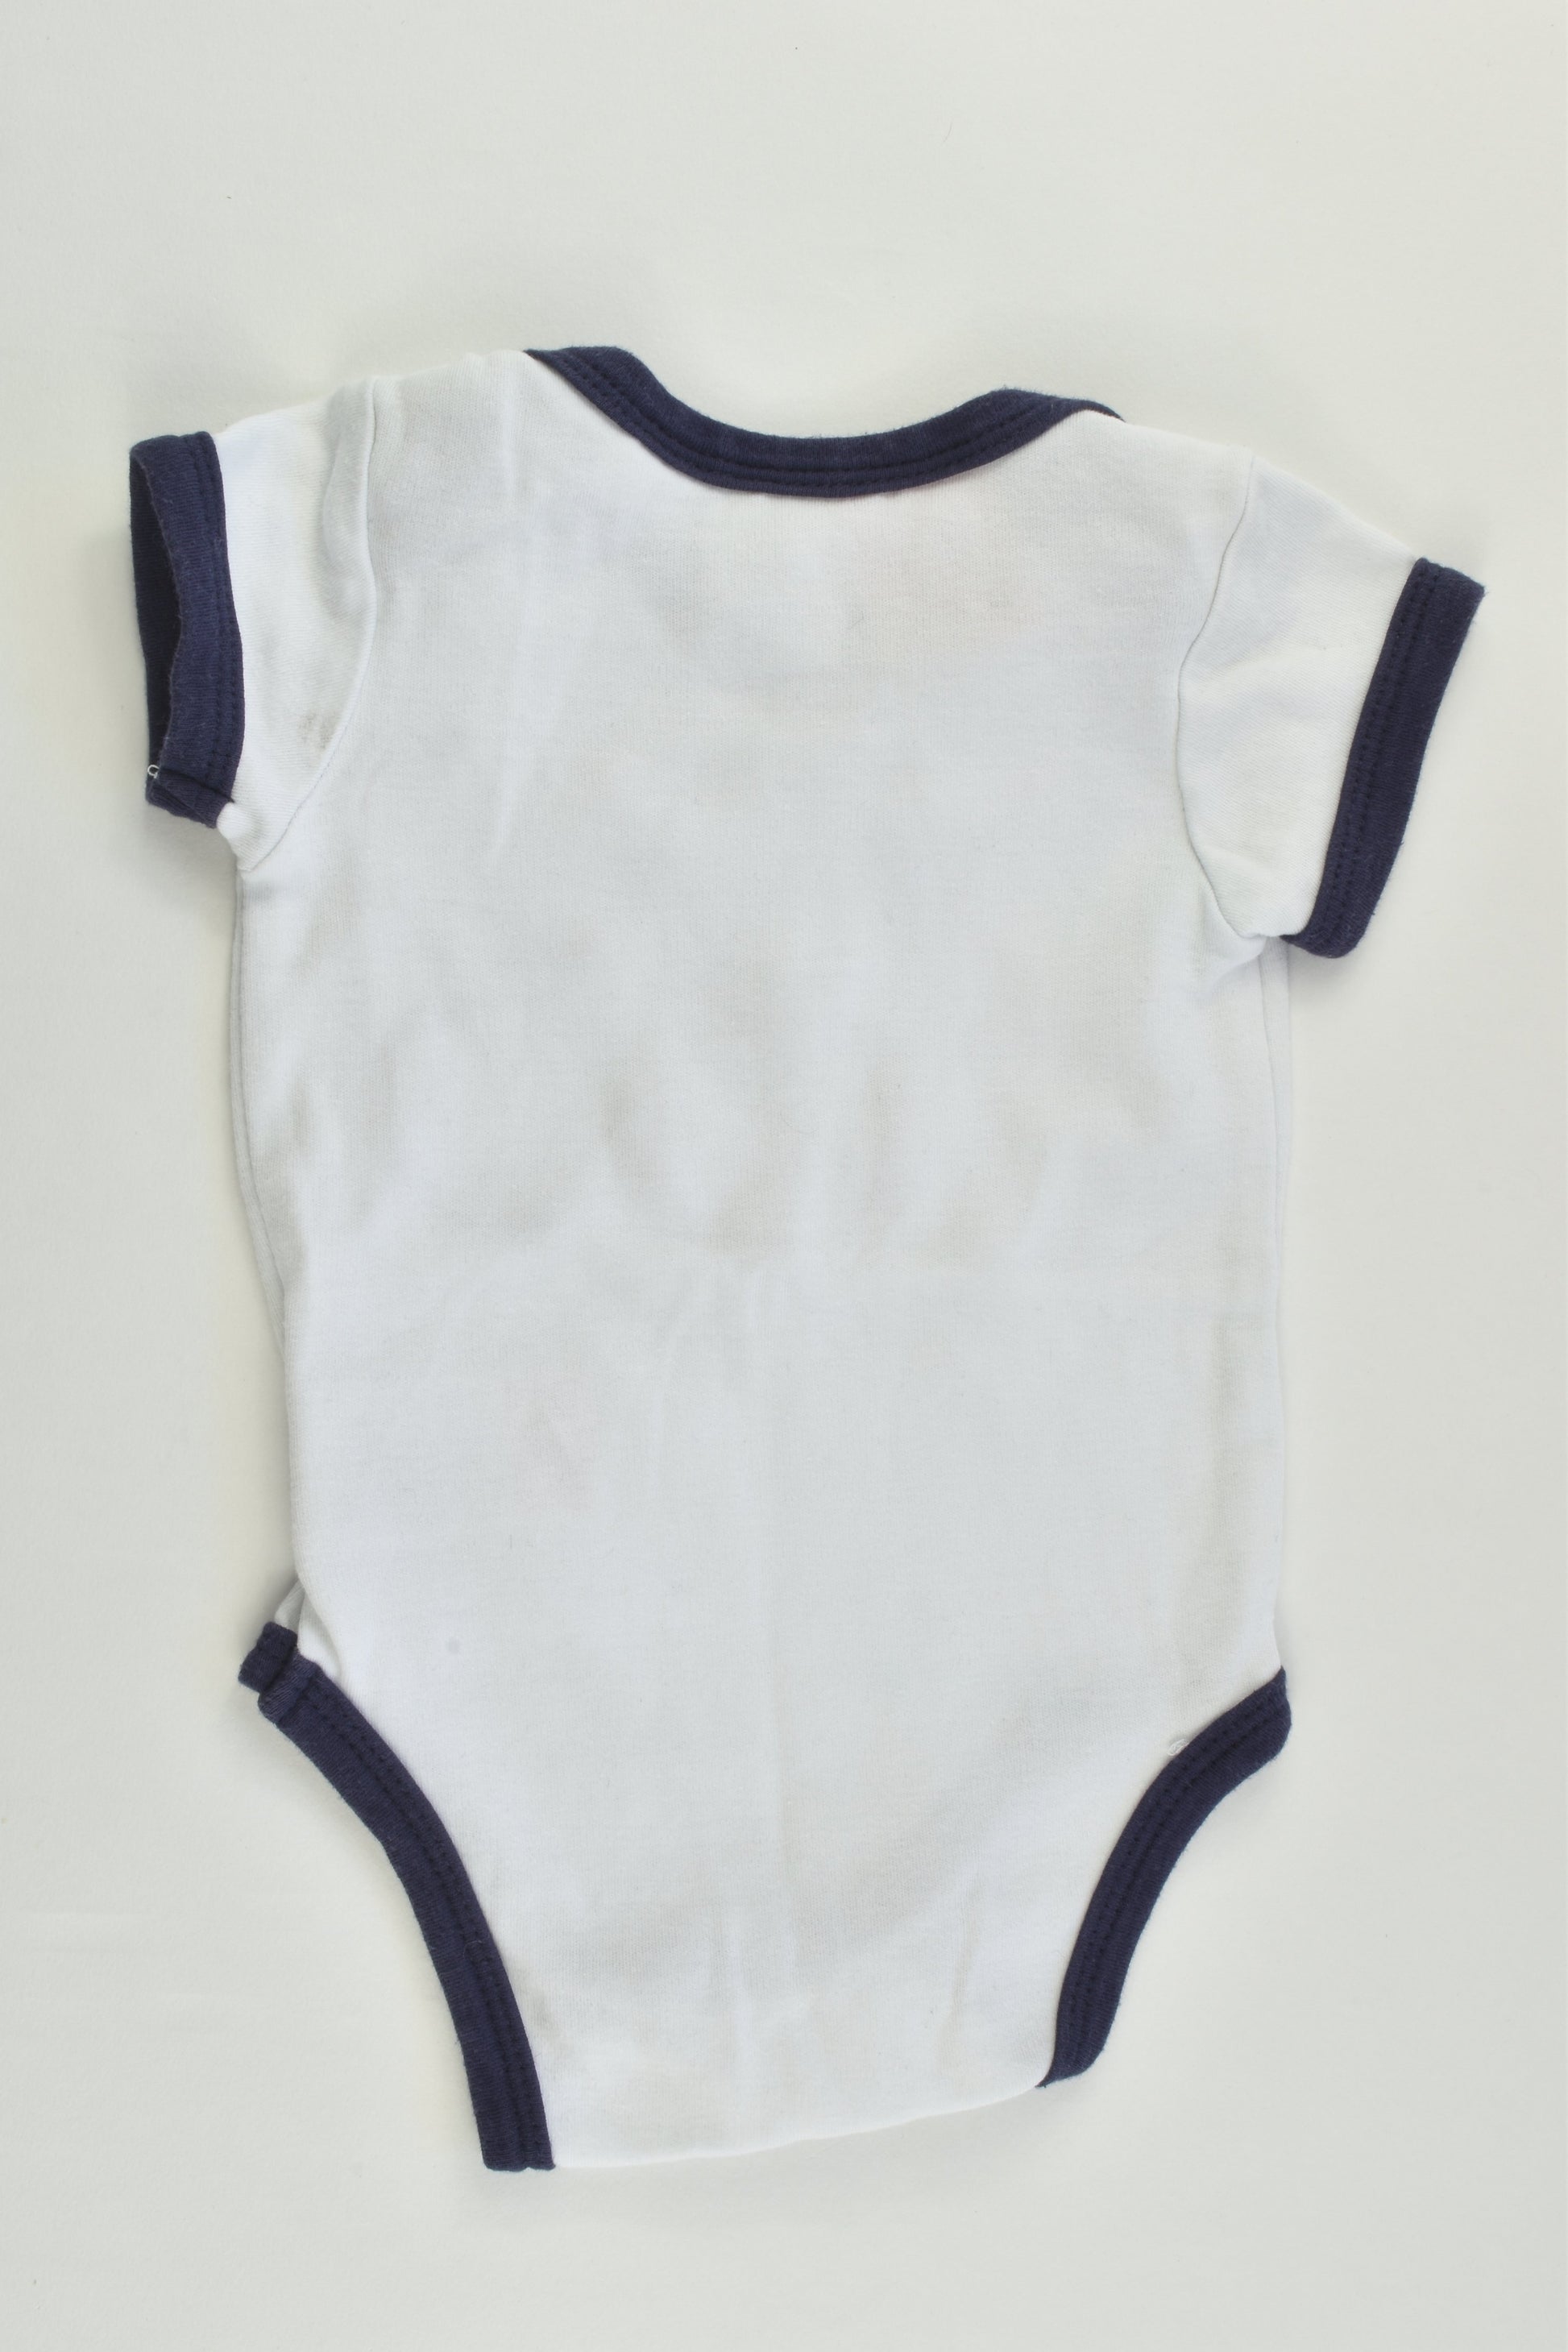 Baby Patch Size 0000 (Newborn) Nautical Bodysuit